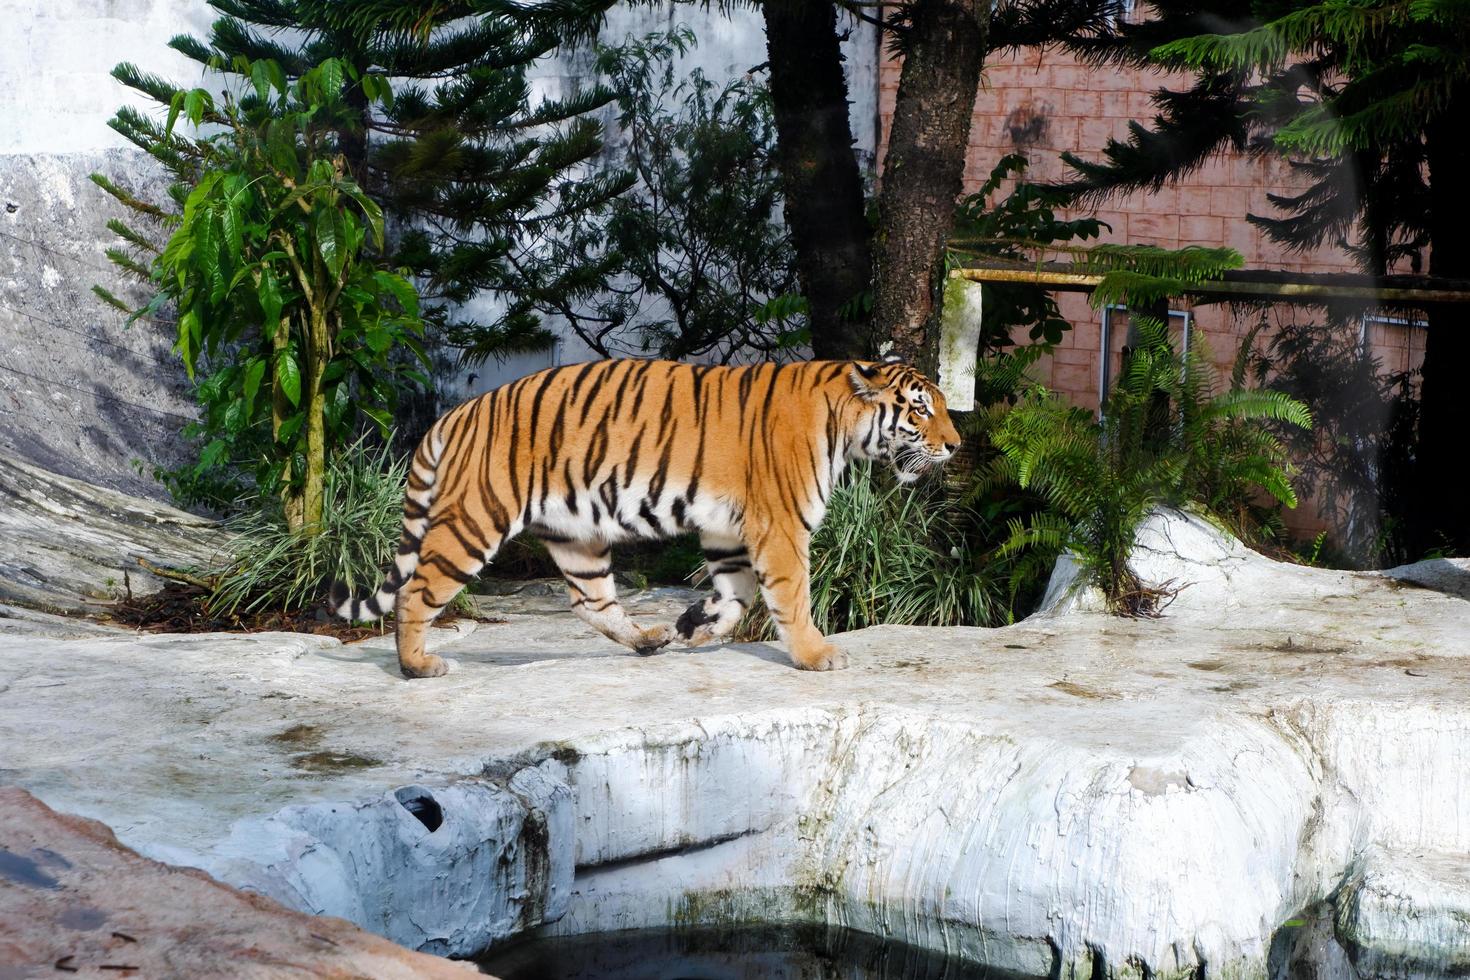 seletivo foco do siberian tigres quem estão caminhando vagaroso dentro seus gaiolas. foto